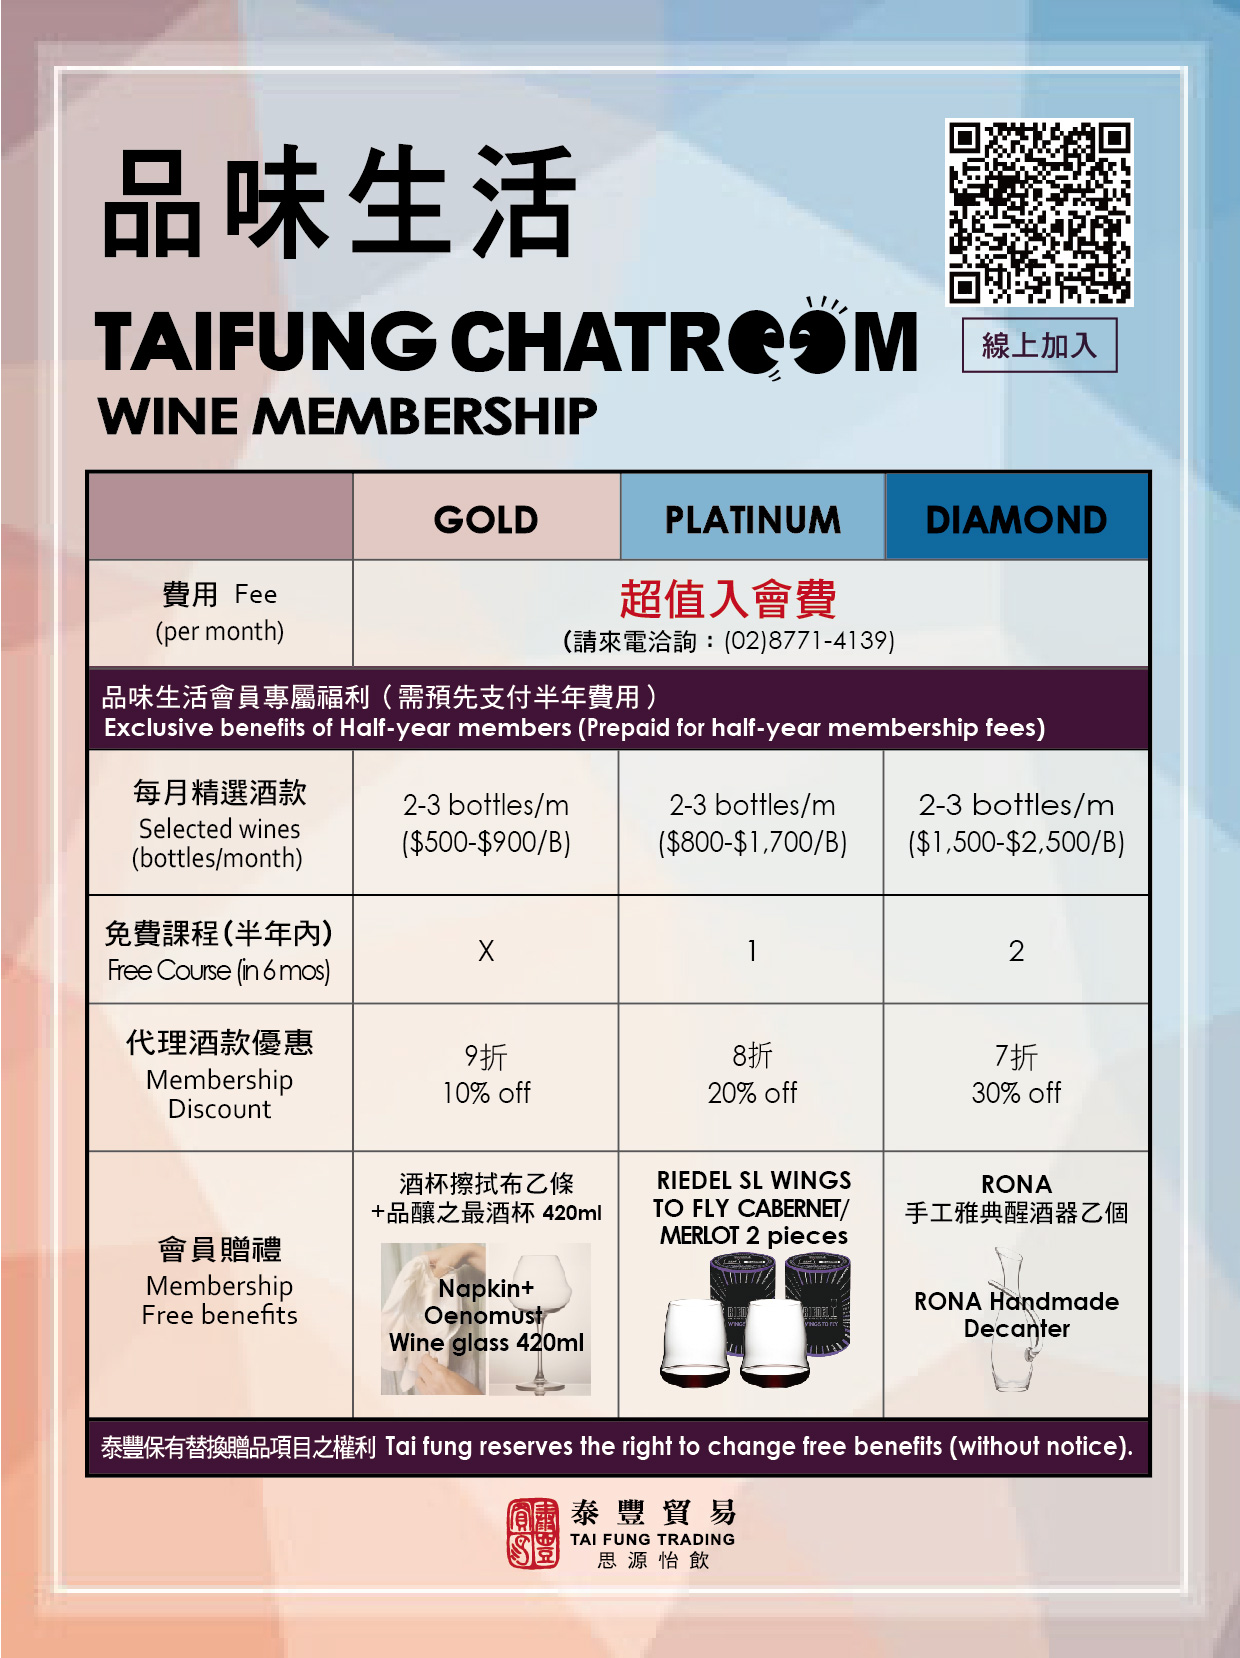 品味生活 Taifung CHATROOM Wine Membership